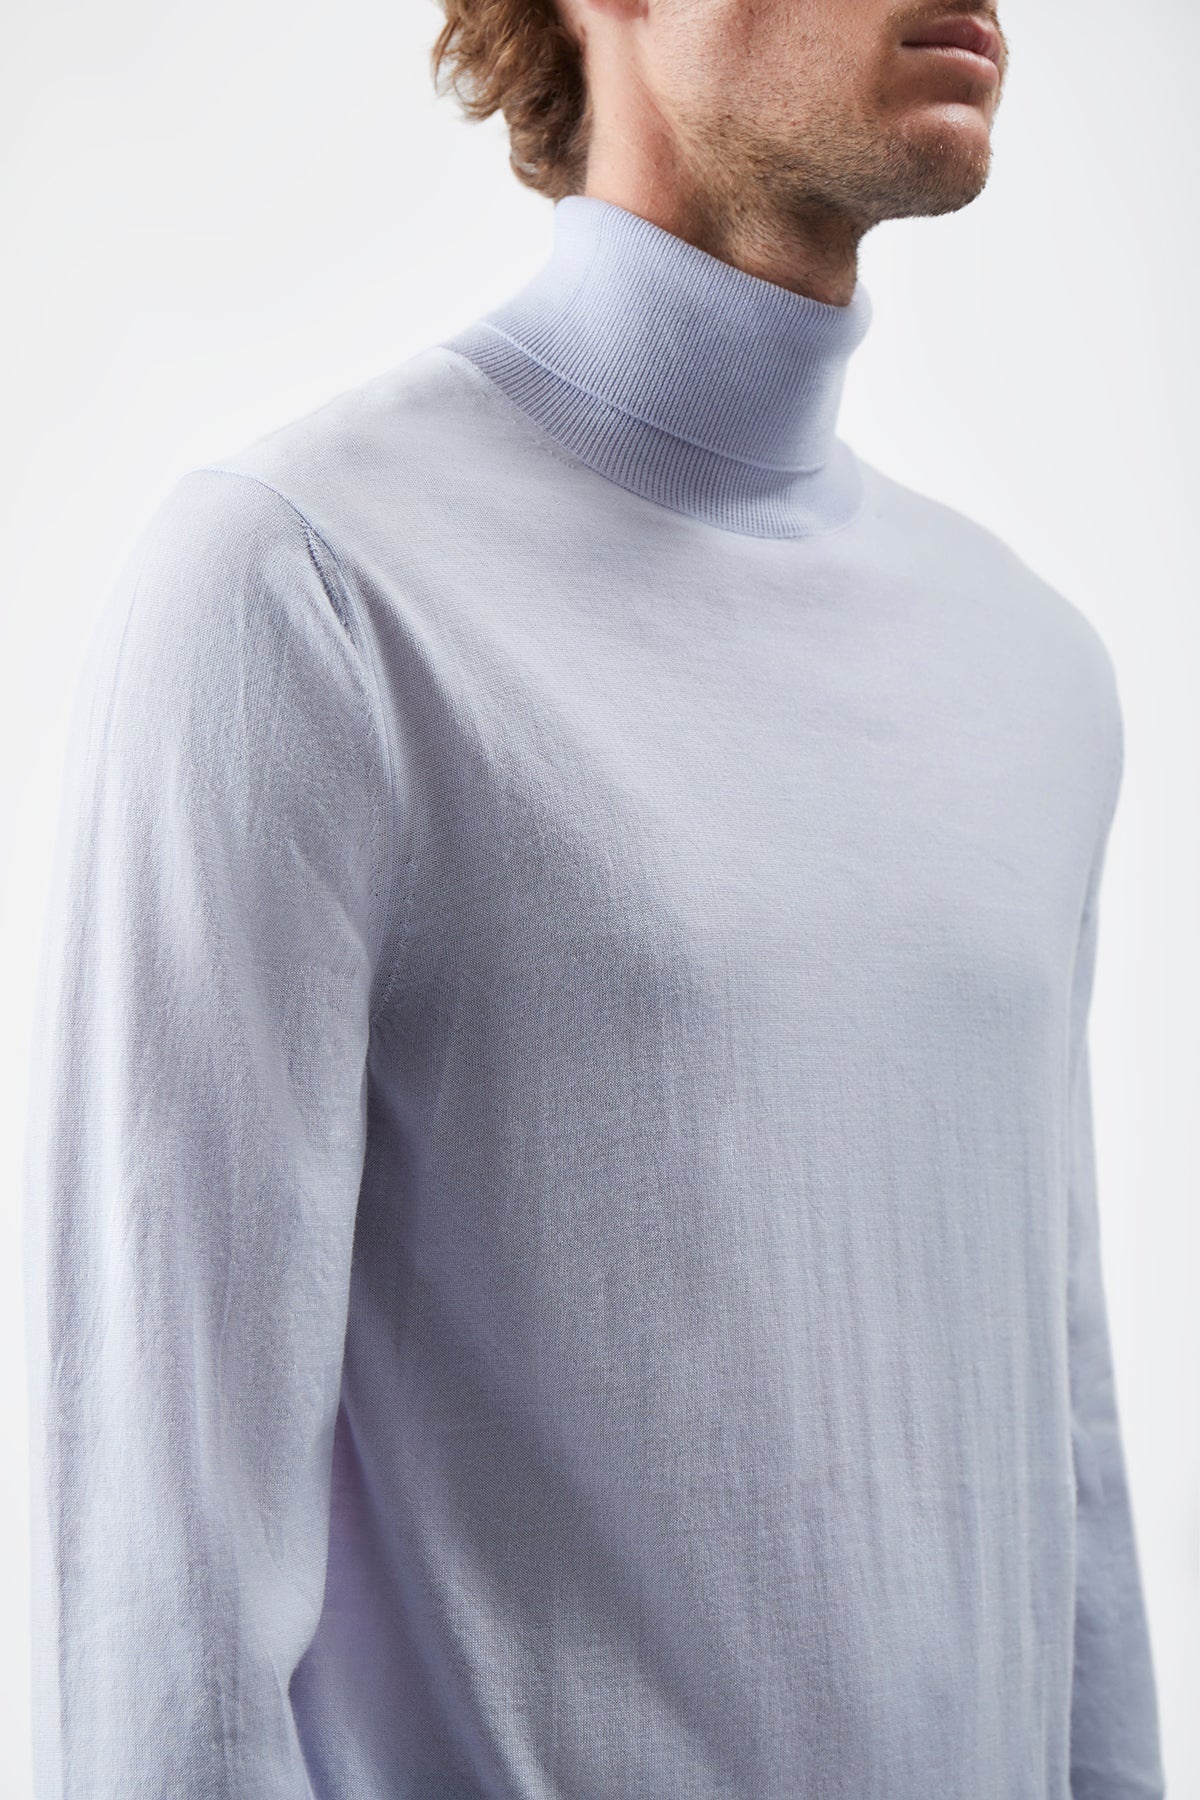 Jermaine Knit Turtleneck in Halogen Blue Merino Wool - 5